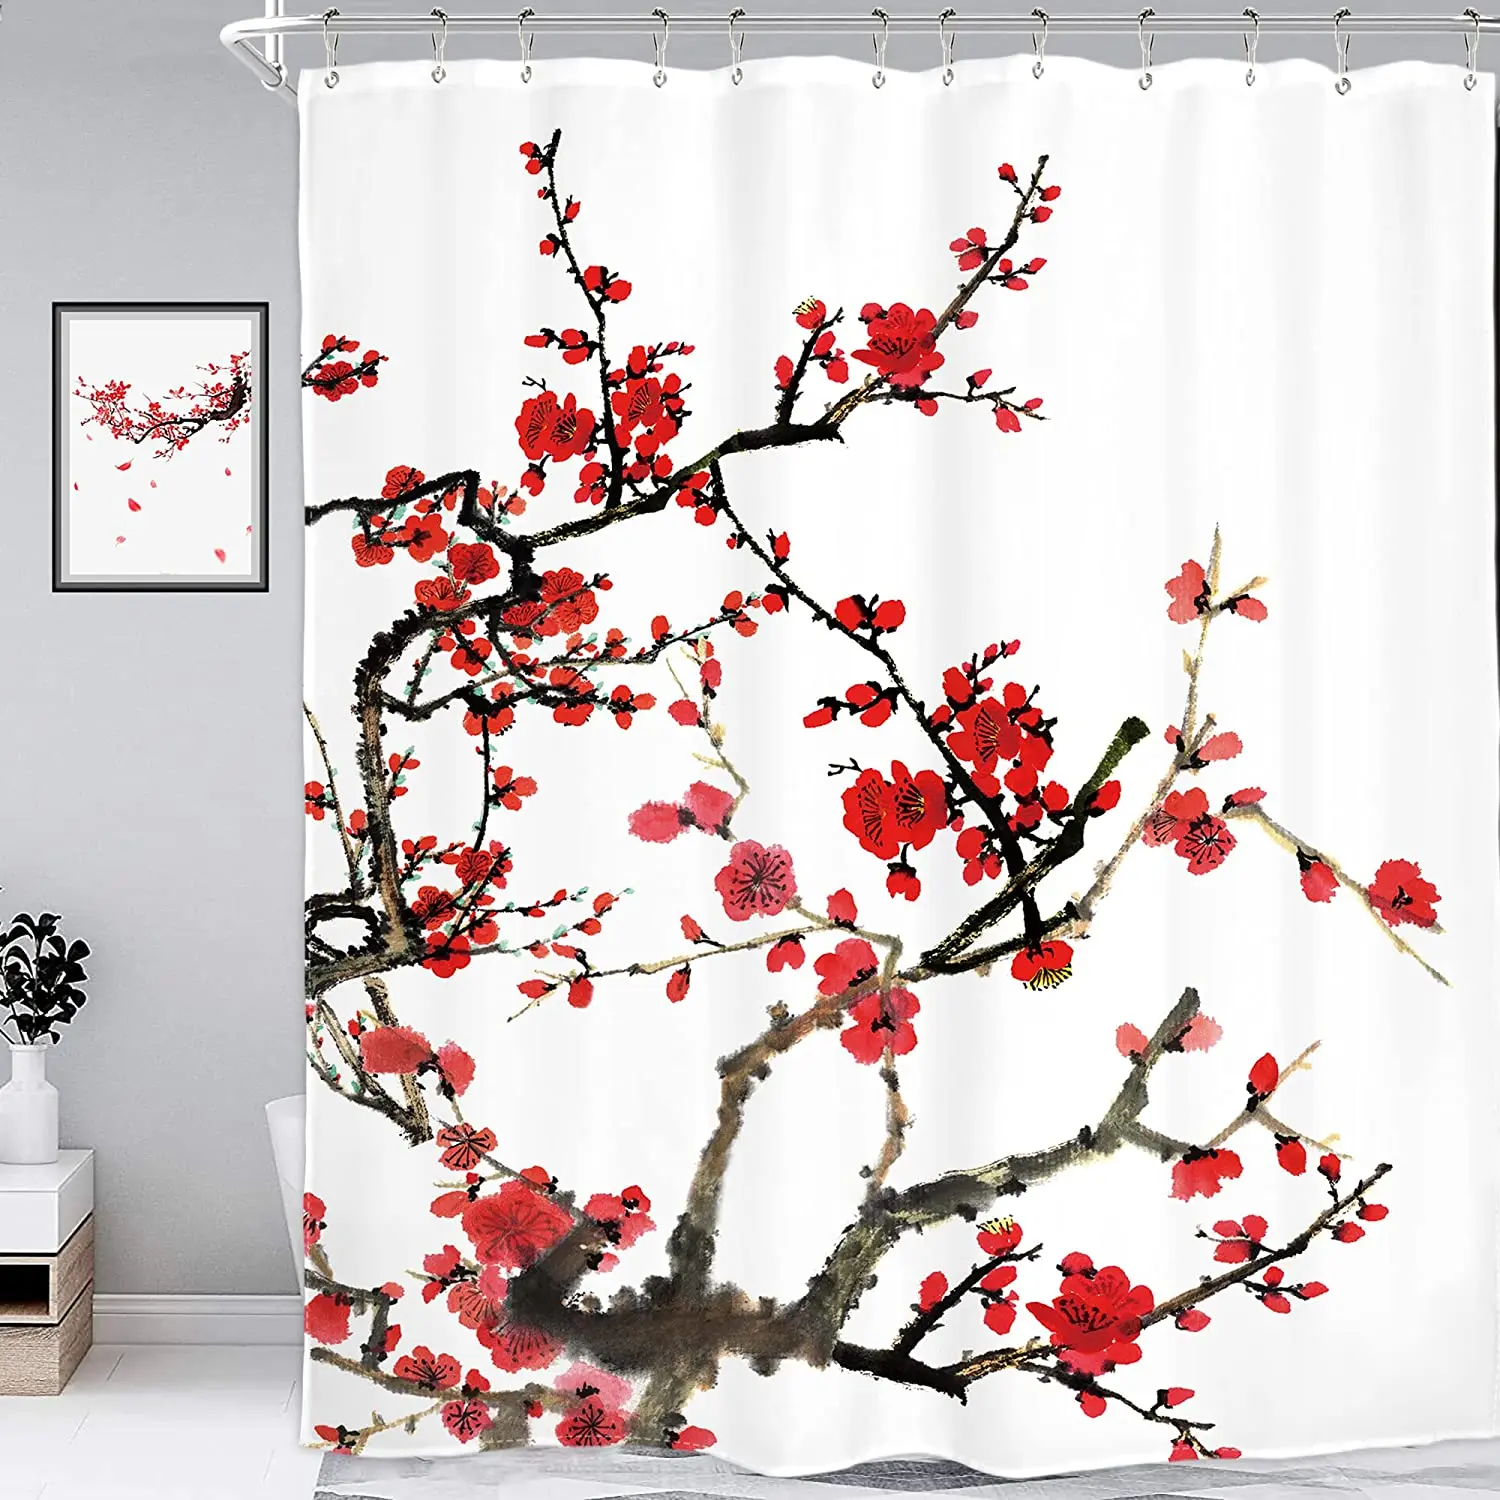 

Шторы для душа с японскими цветами вишни, набор с чернильными растениями, красными цветами сливы, азиатская китайская ткань из полиэстера, д...